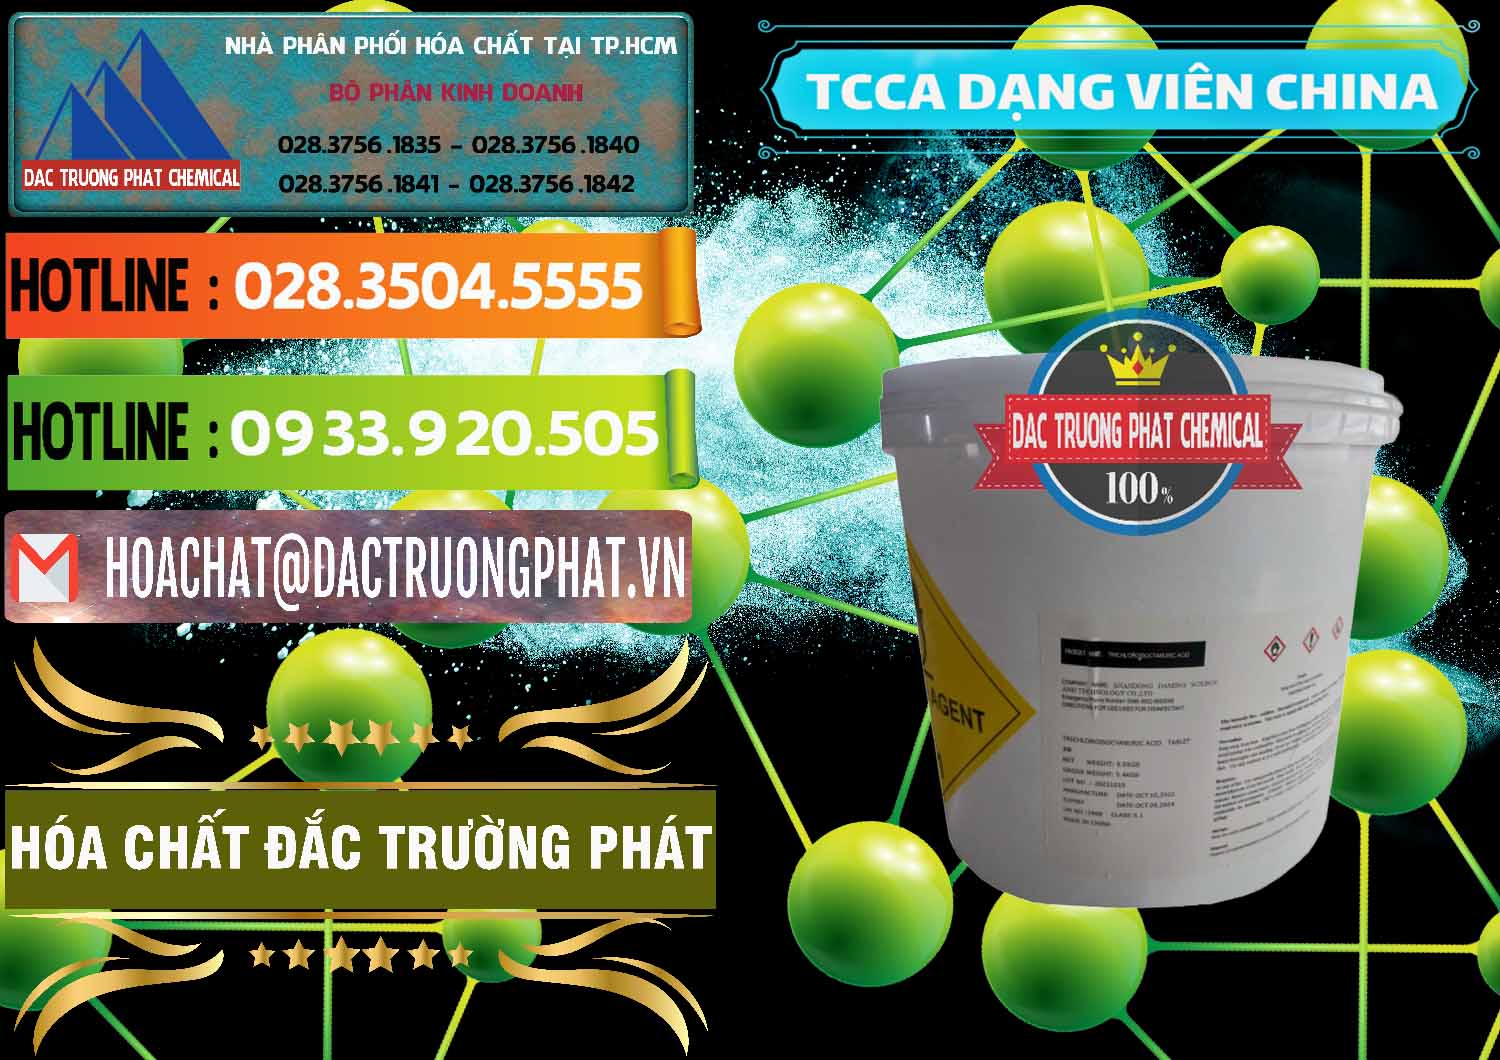 Công ty chuyên cung ứng _ bán TCCA - Acid Trichloroisocyanuric Dạng Viên Thùng 5kg Trung Quốc China - 0379 - Cty chuyên cung ứng - phân phối hóa chất tại TP.HCM - cungcaphoachat.com.vn